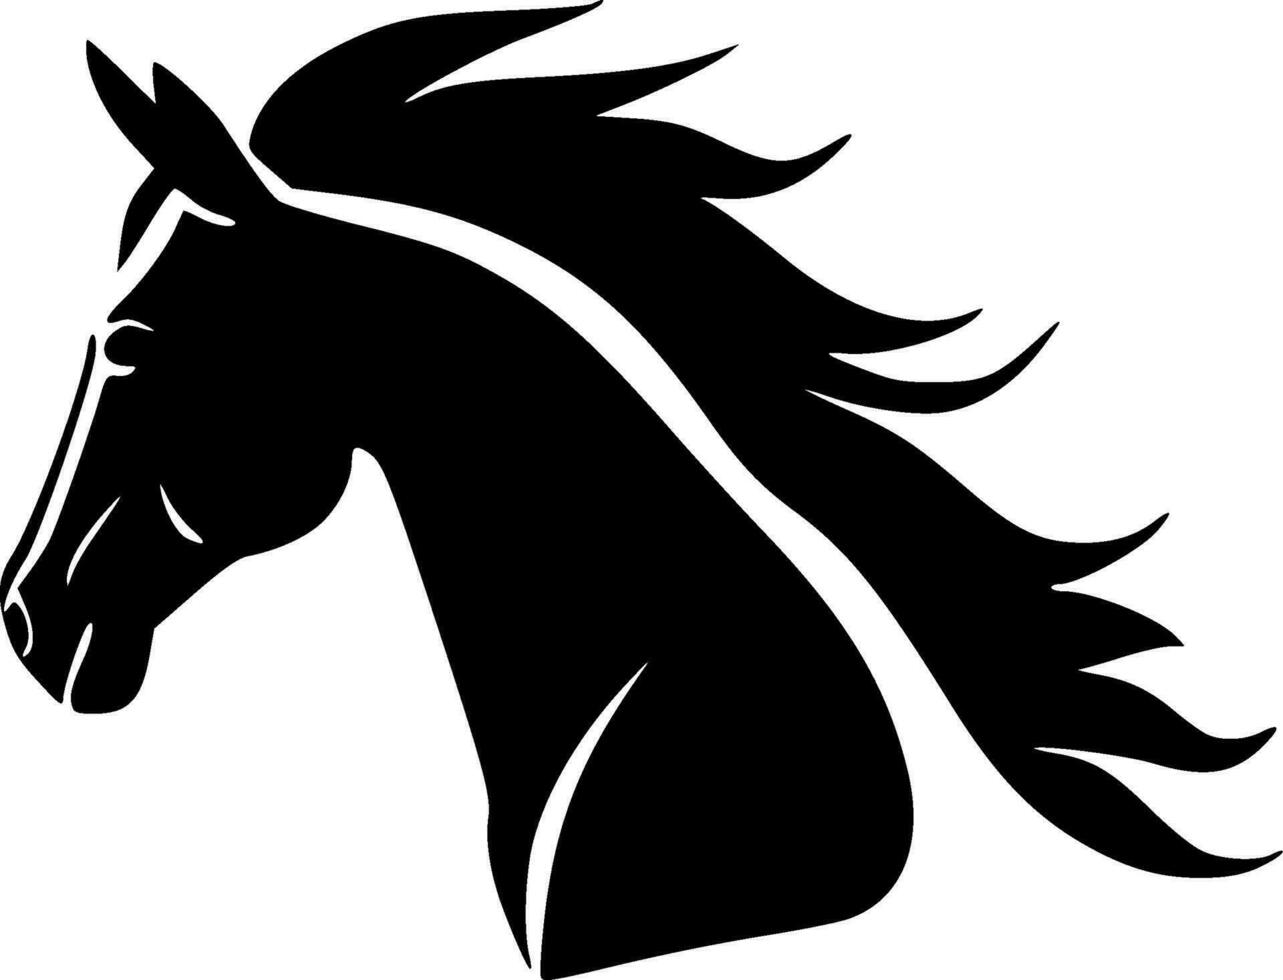 häst - hög kvalitet vektor logotyp - vektor illustration idealisk för t-shirt grafisk